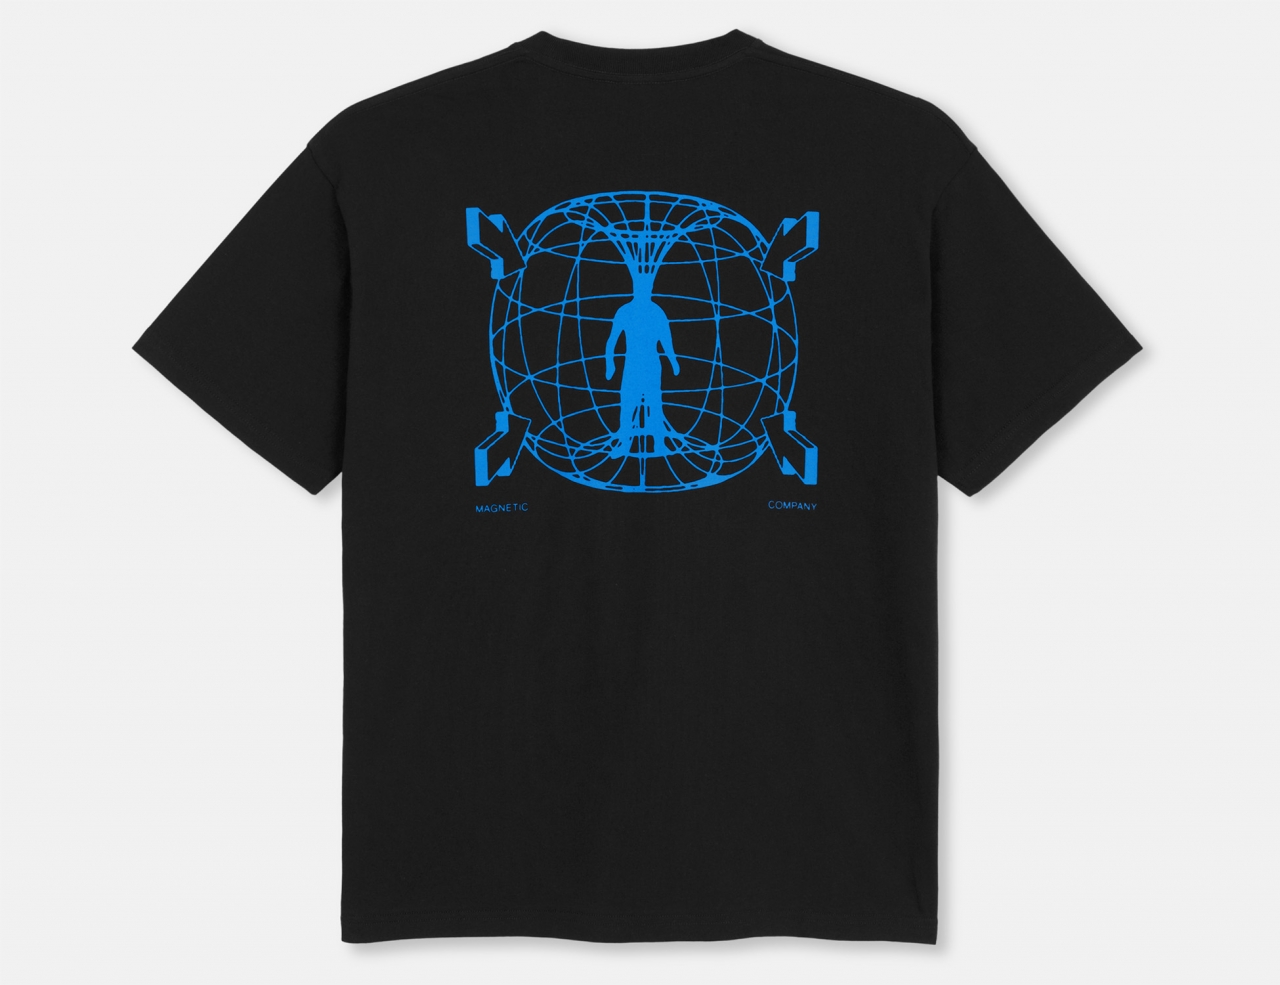 Polar Skate Co. Magnet T-Shirt - Black